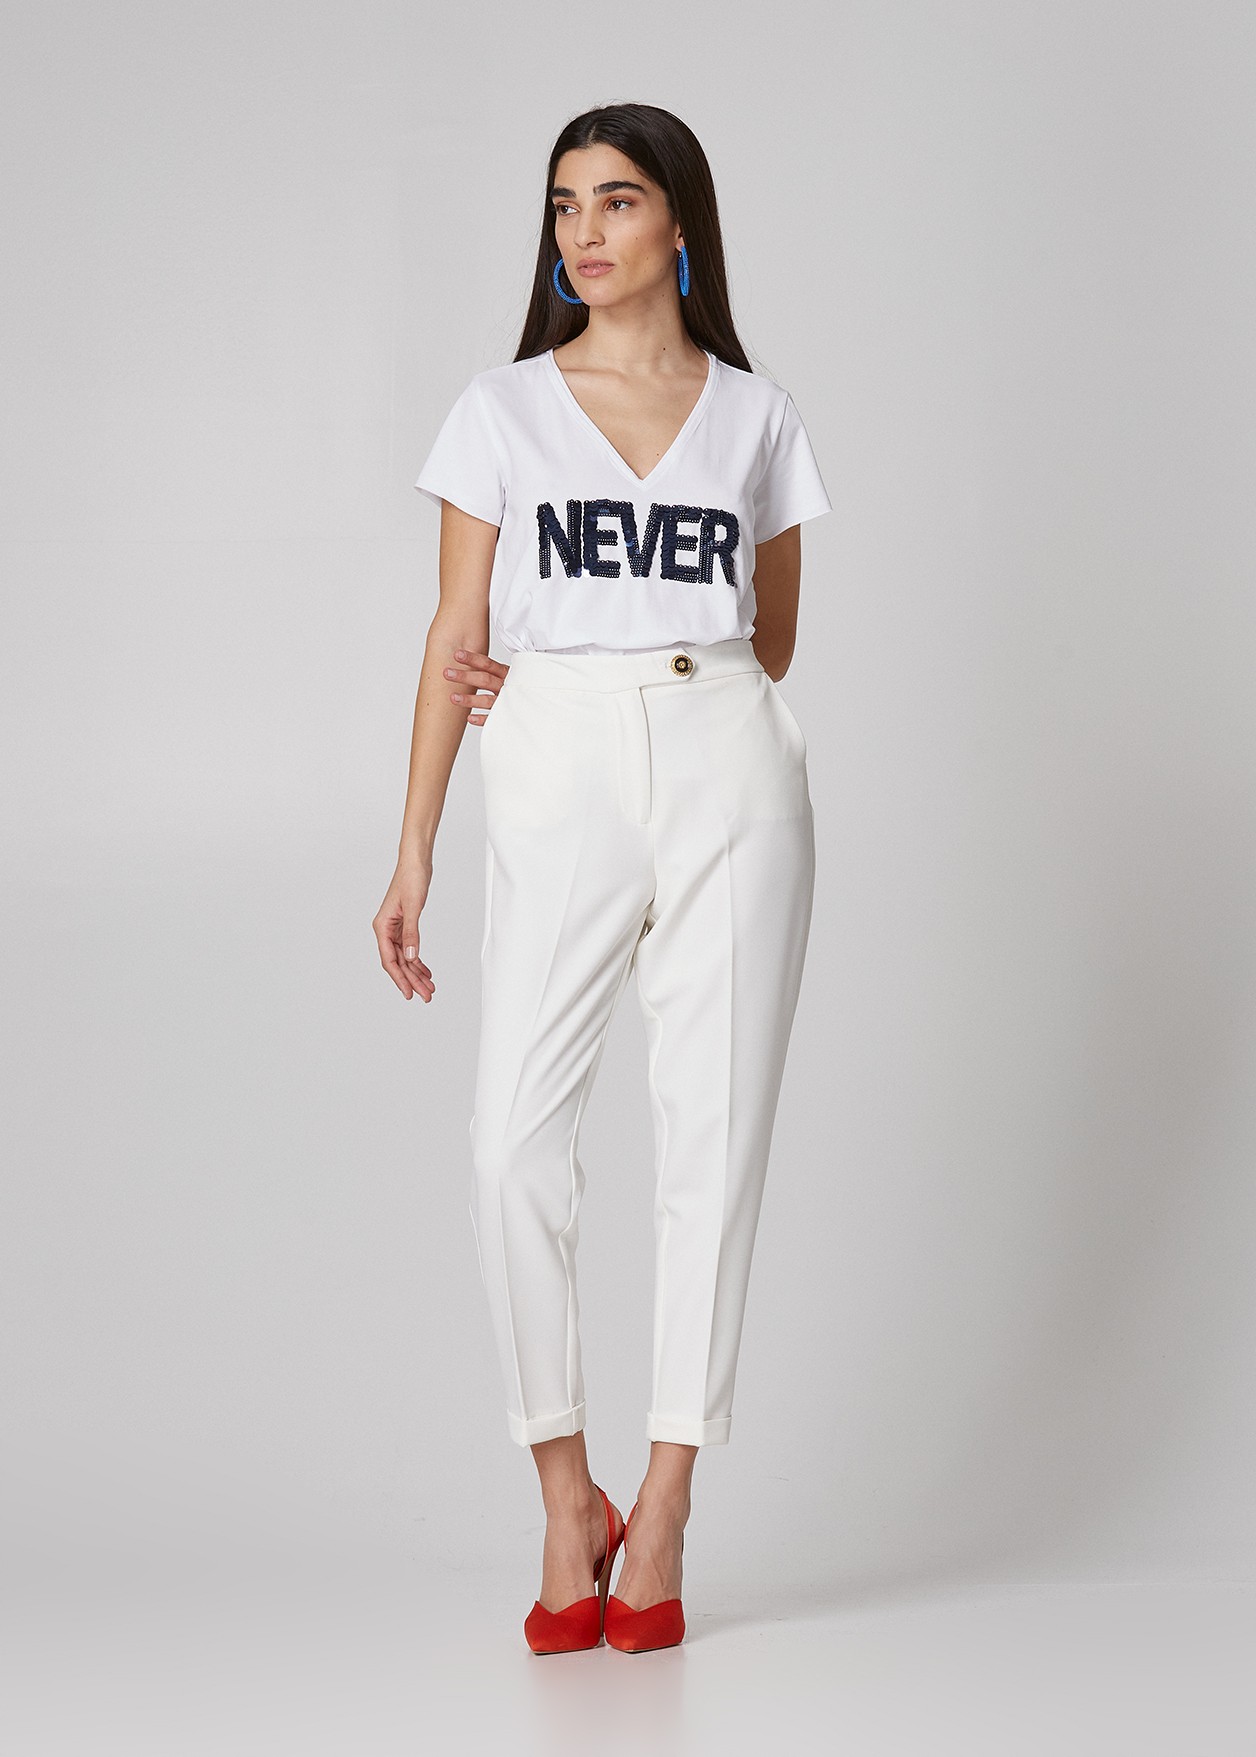 Тениска с щампа "Never"